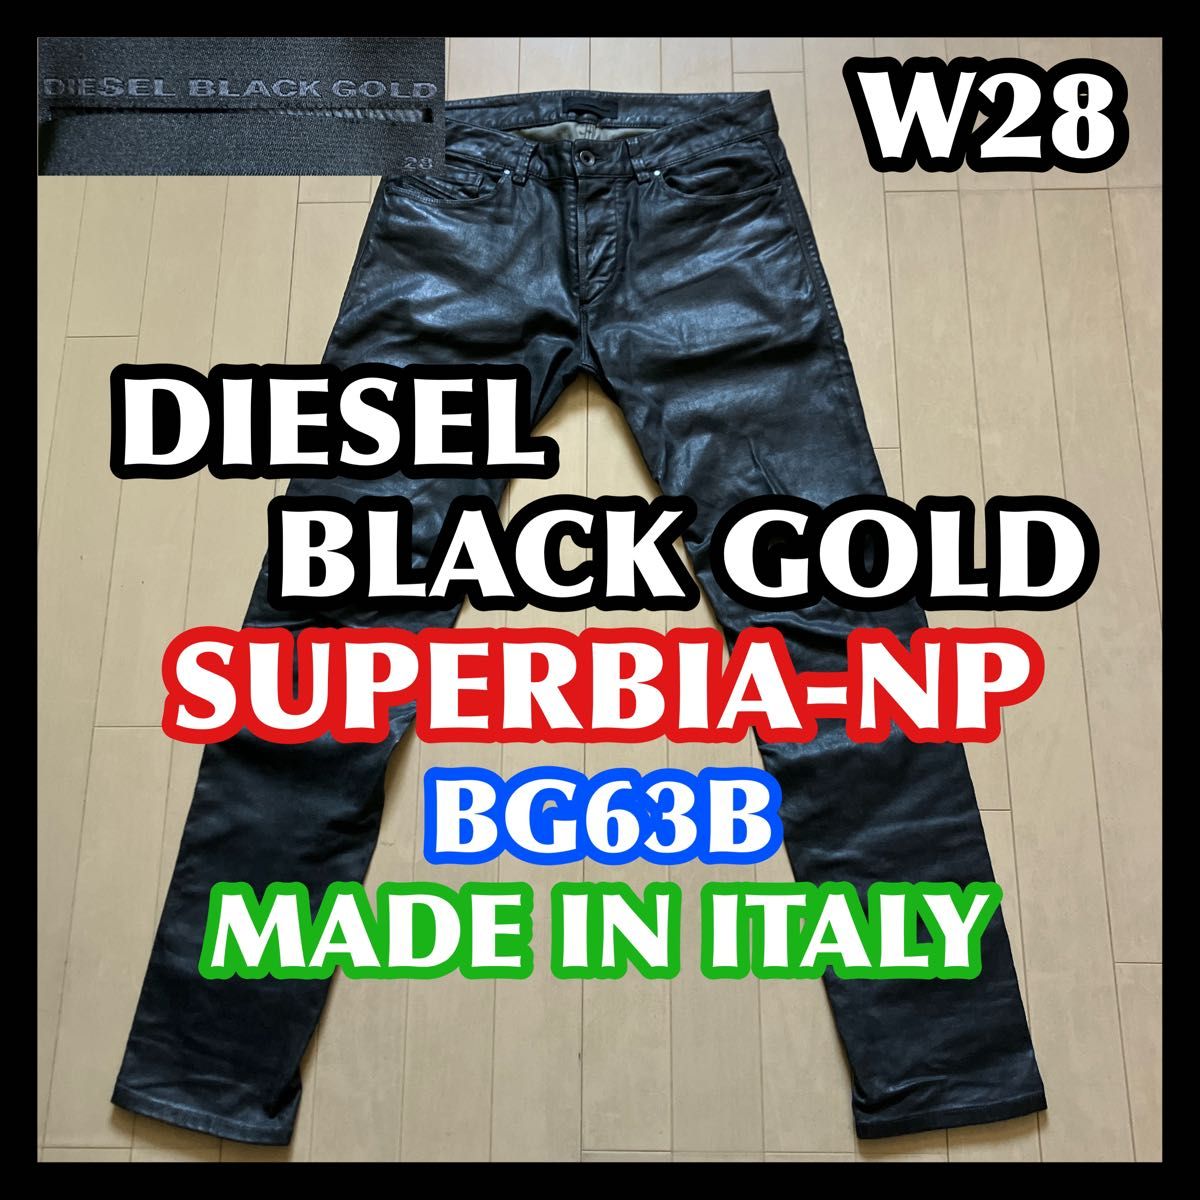 DIESEL BLACK GOLD コーティングデニム W28 グレー 黒 ディーゼルブラックゴールド レザーパンツ風 ジーンズ